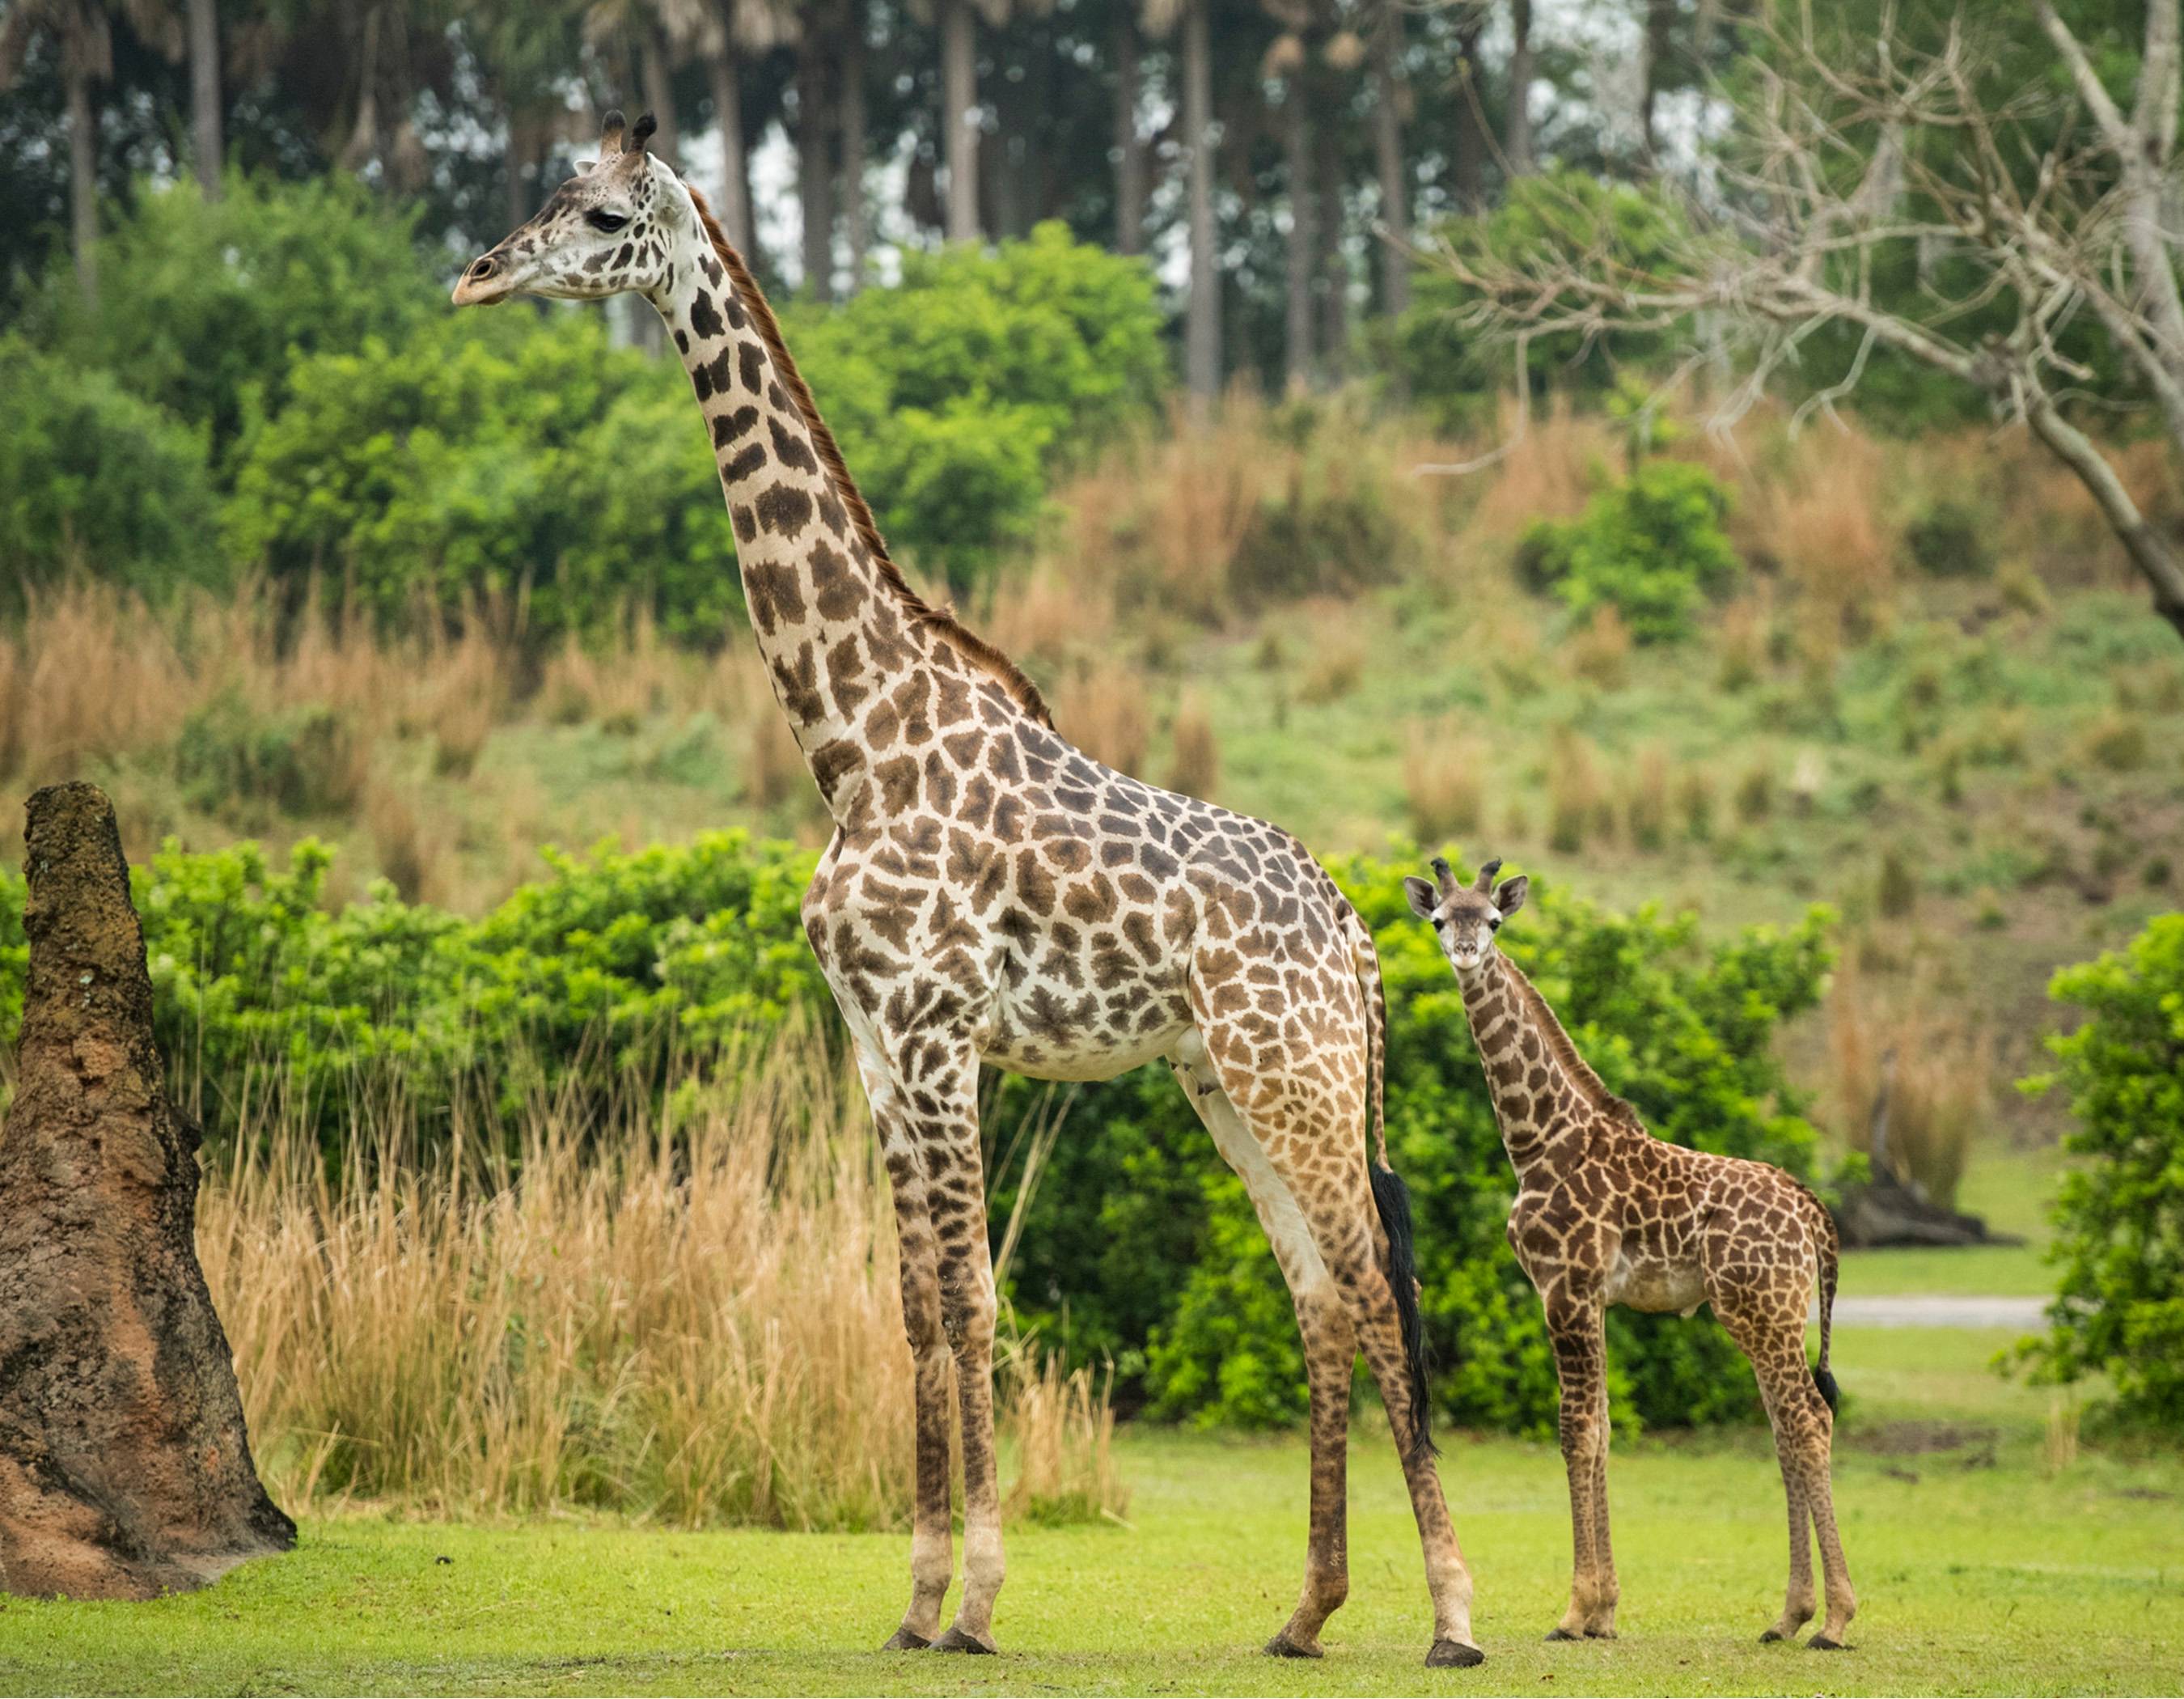 Jabari the Masai giraffe